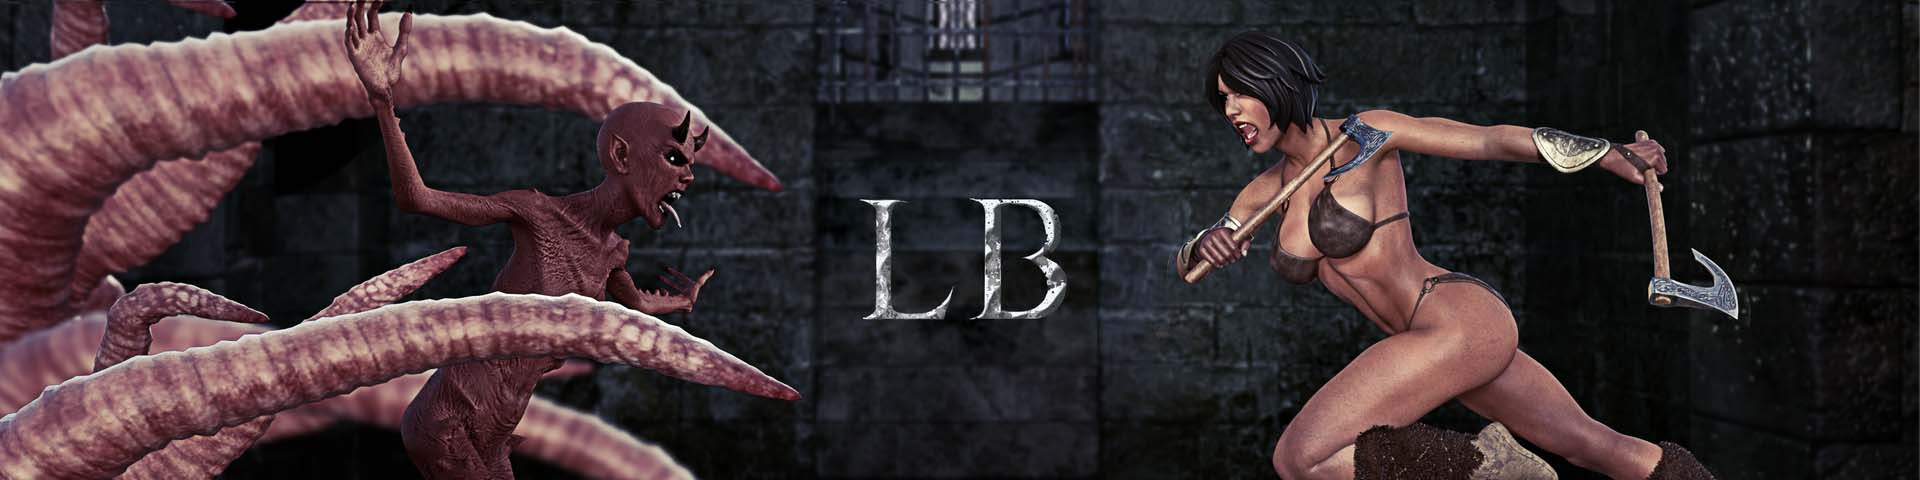 لعبة The Last Barbarian 3d للكبار